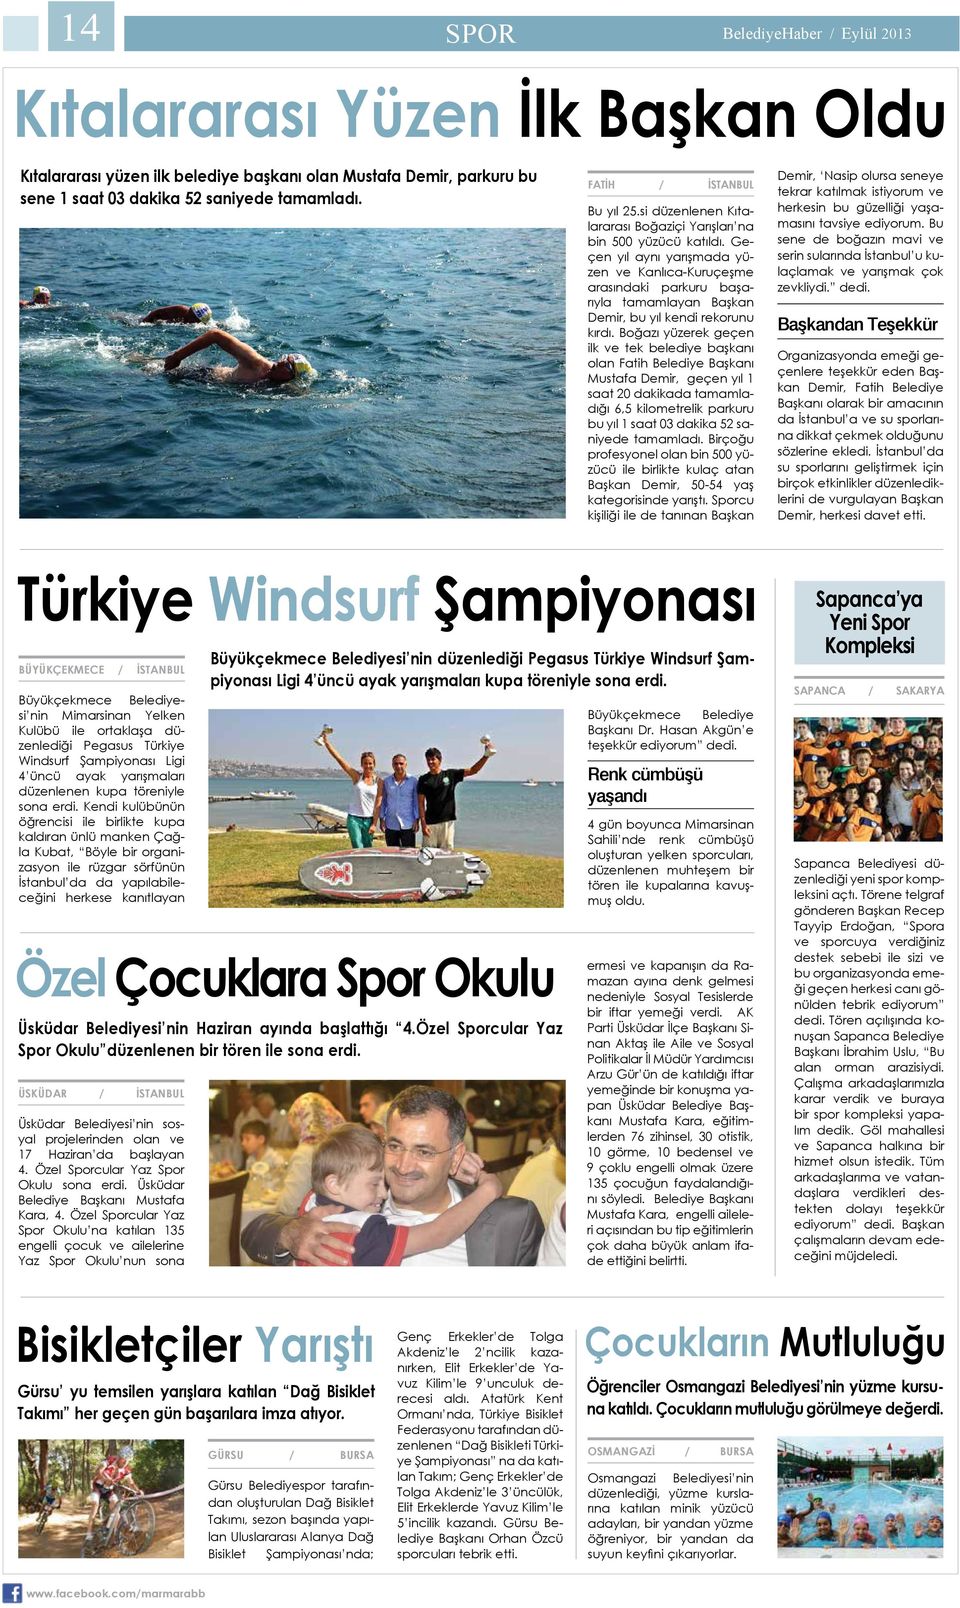 Geçen yıl aynı yarışmada yüzen ve Kanlıca-Kuruçeşme arasındaki parkuru başarıyla tamamlayan Başkan Demir, bu yıl kendi rekorunu kırdı.